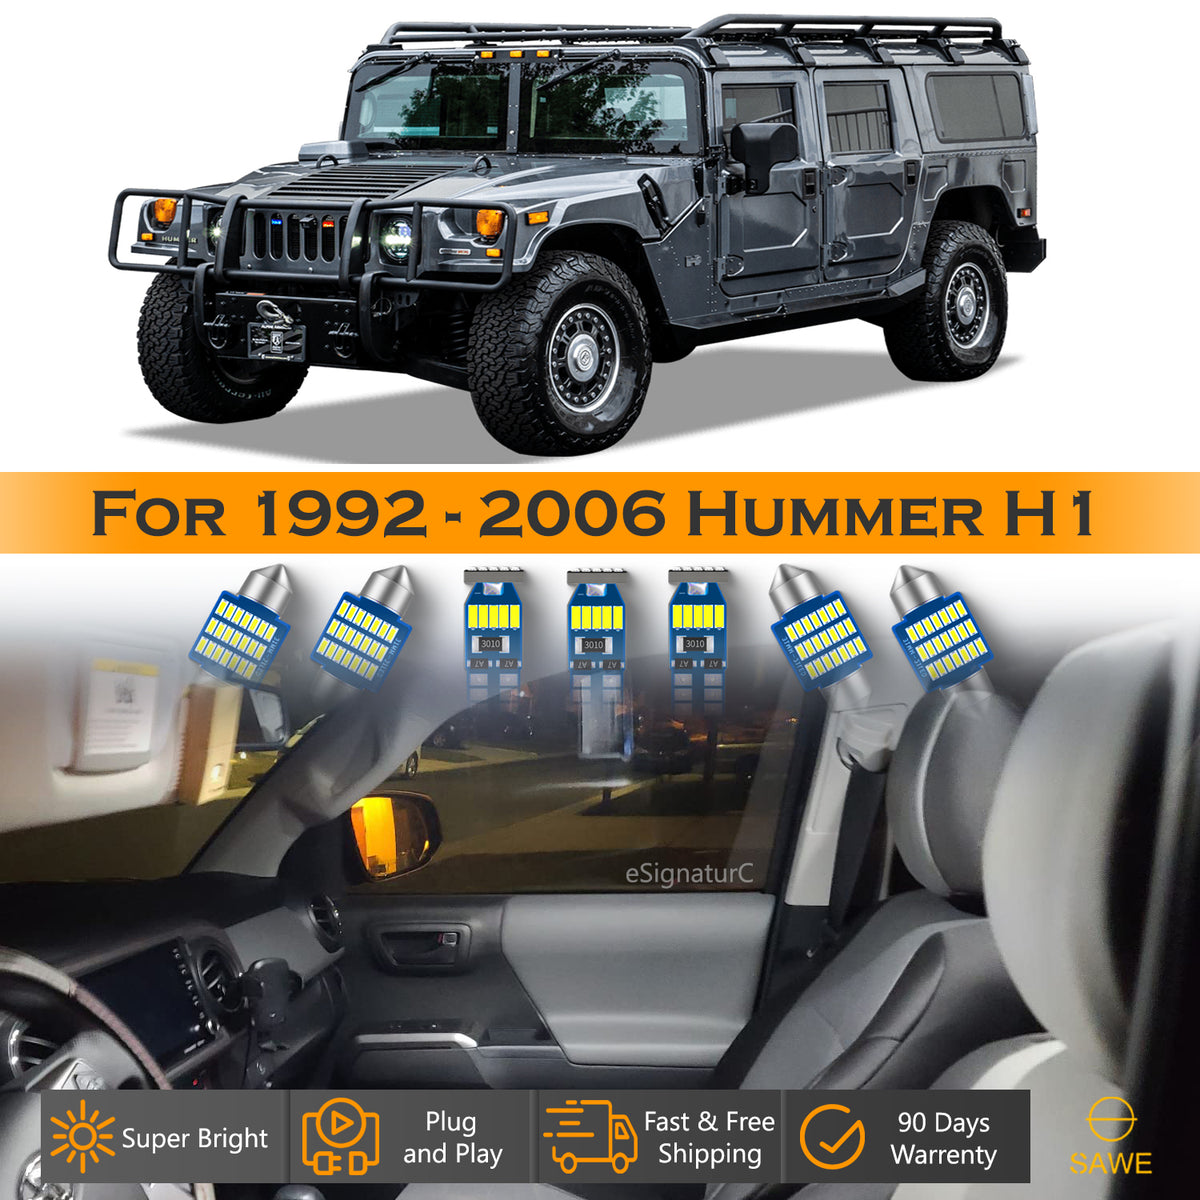 For Hummer H1 Interior LED Lights - Dome & Map Light Bulb Package Kit for 2002 - 2006 - White